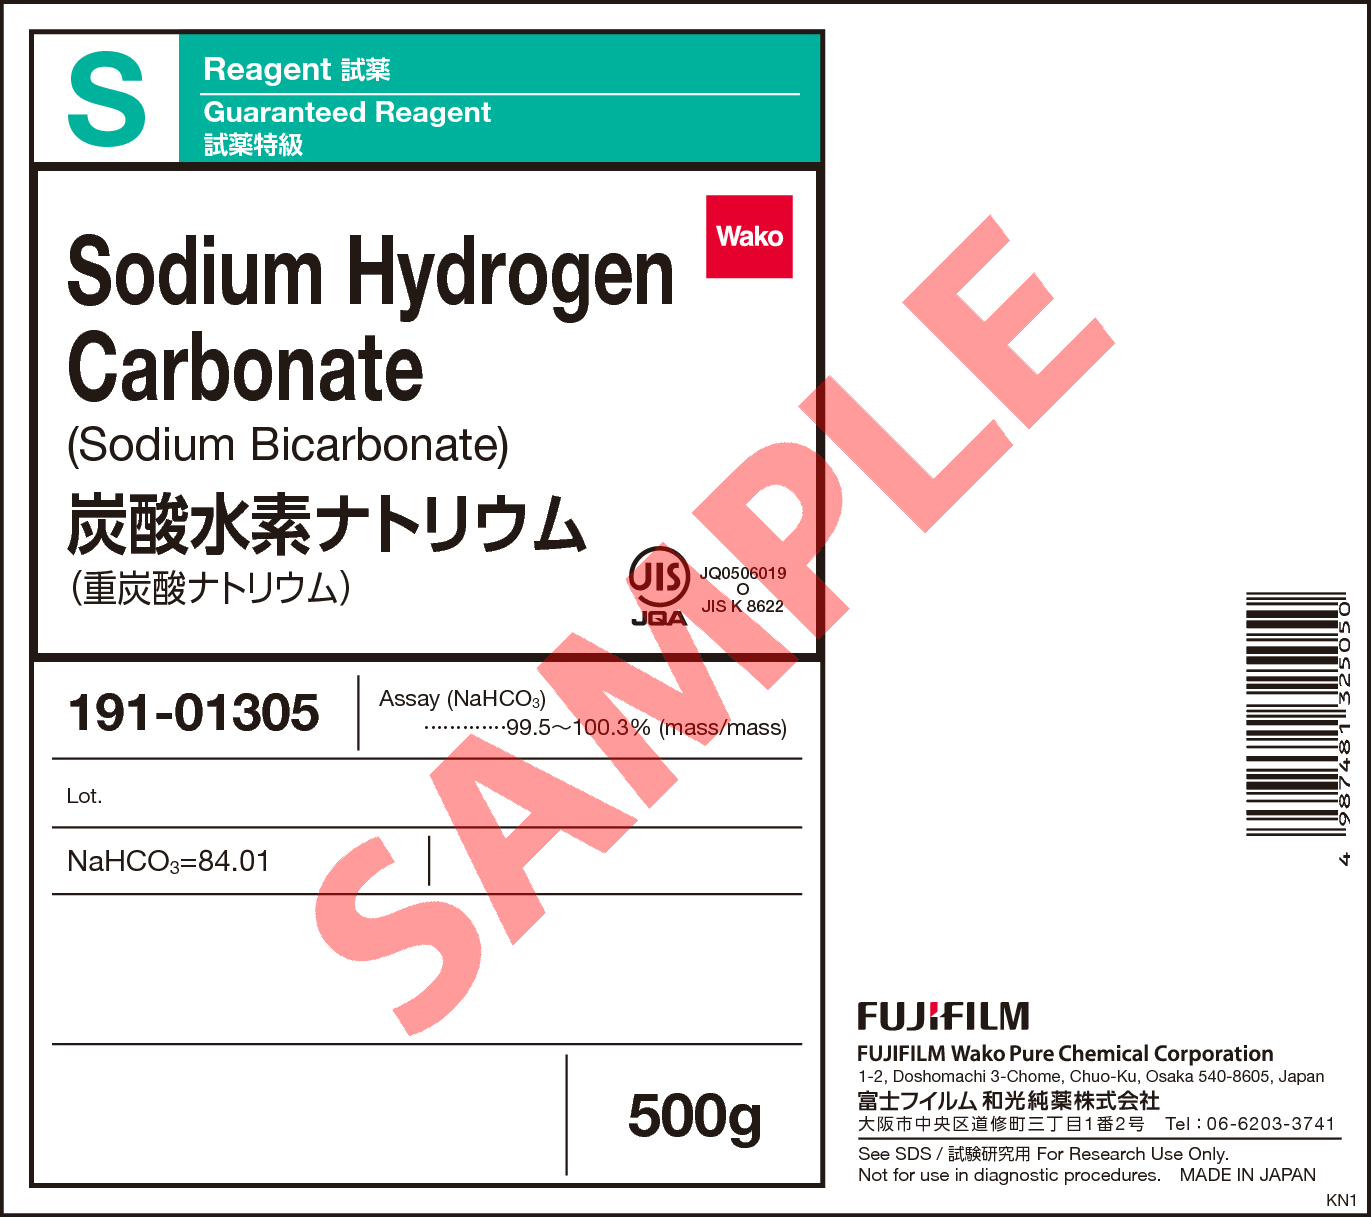 144 55 8 炭酸水素ナトリウム Sodium Hydrogen Carbonate 195 197 197 199 191 詳細情報 分析 常用試薬 ラボウェア 試薬 富士フイルム和光純薬